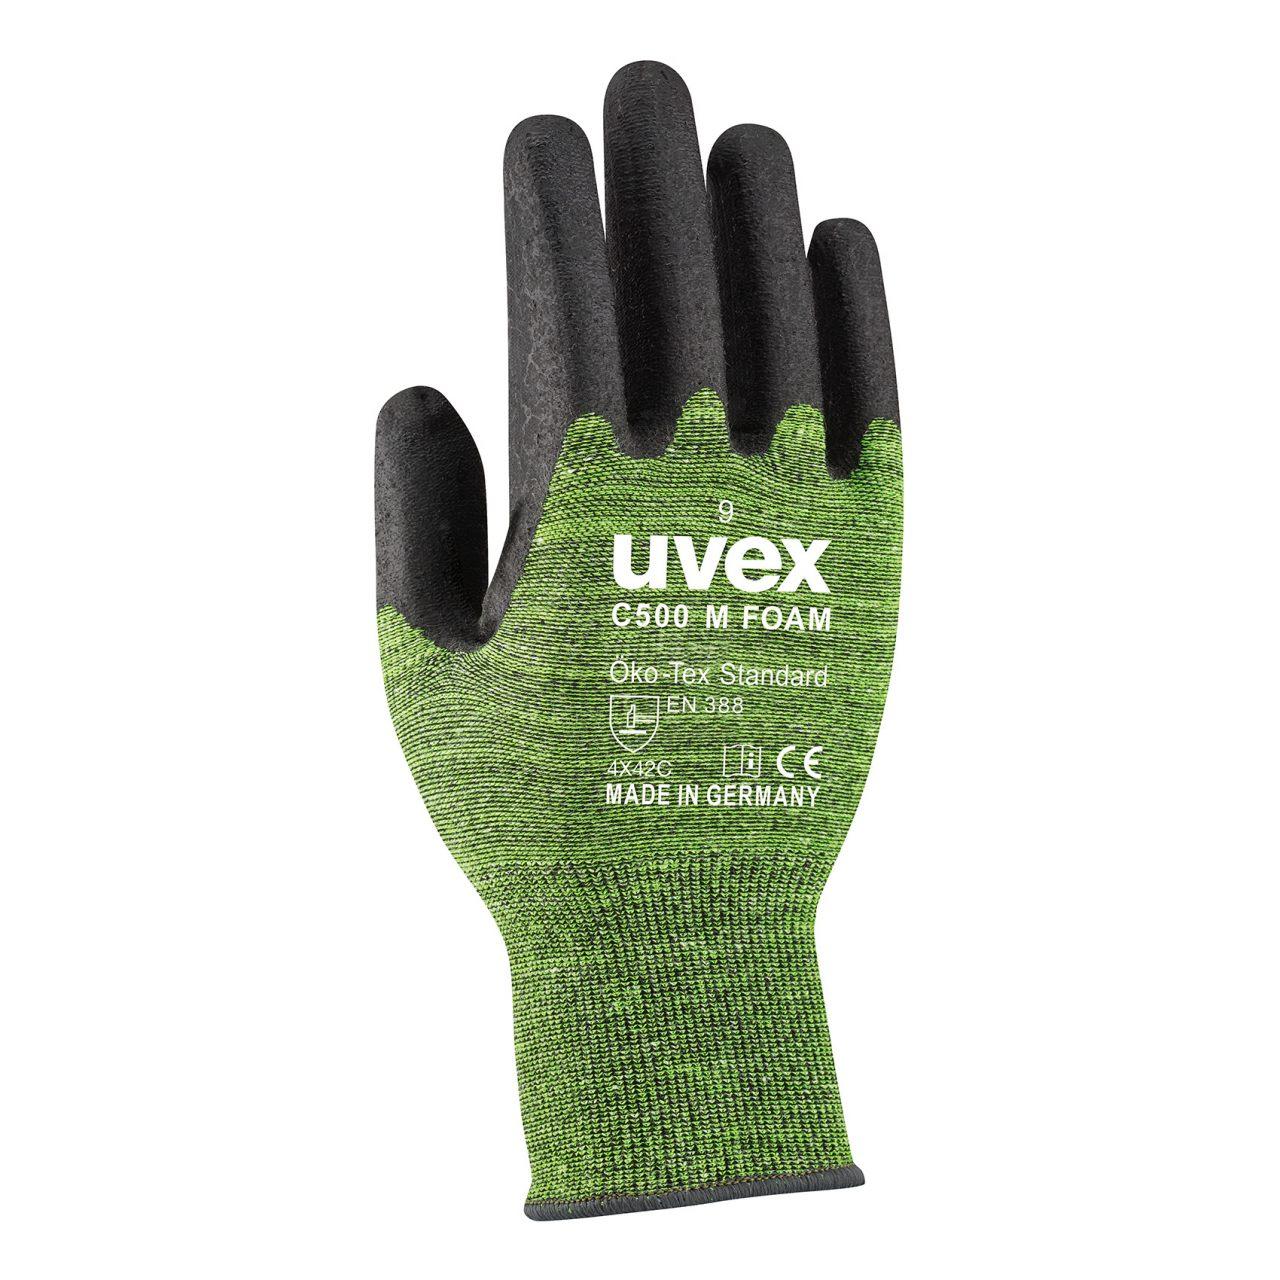 Защитные перчатки uvex C500 M фом